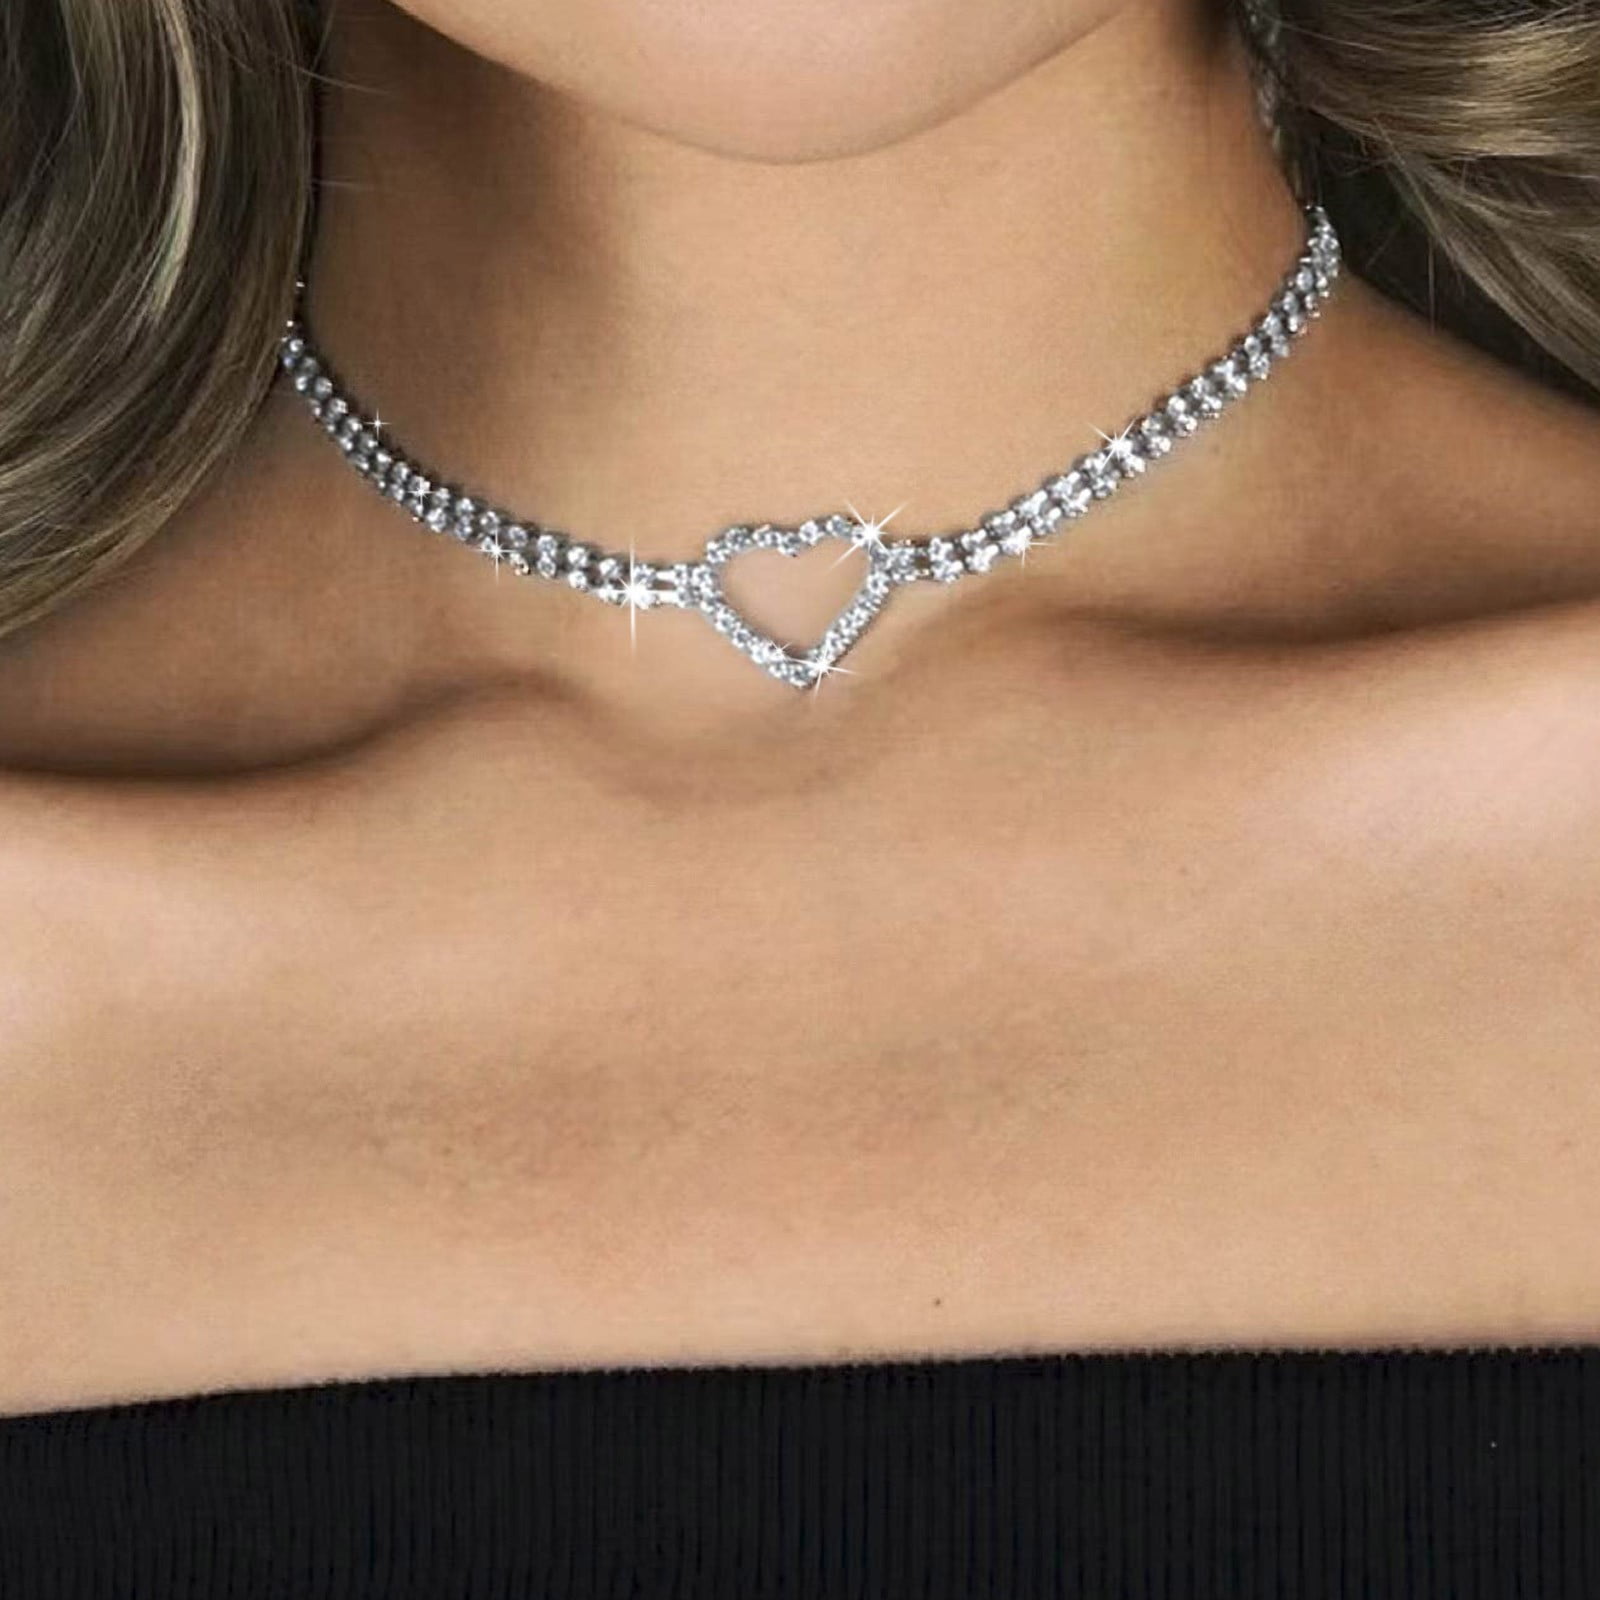 Women Jewelry Pendant Choker Necklace Women Teen Girls Elegant Rhinestone  Tassels Clavicle Chain Necklace Collar Jewelry Gifts Women Jewelry Set